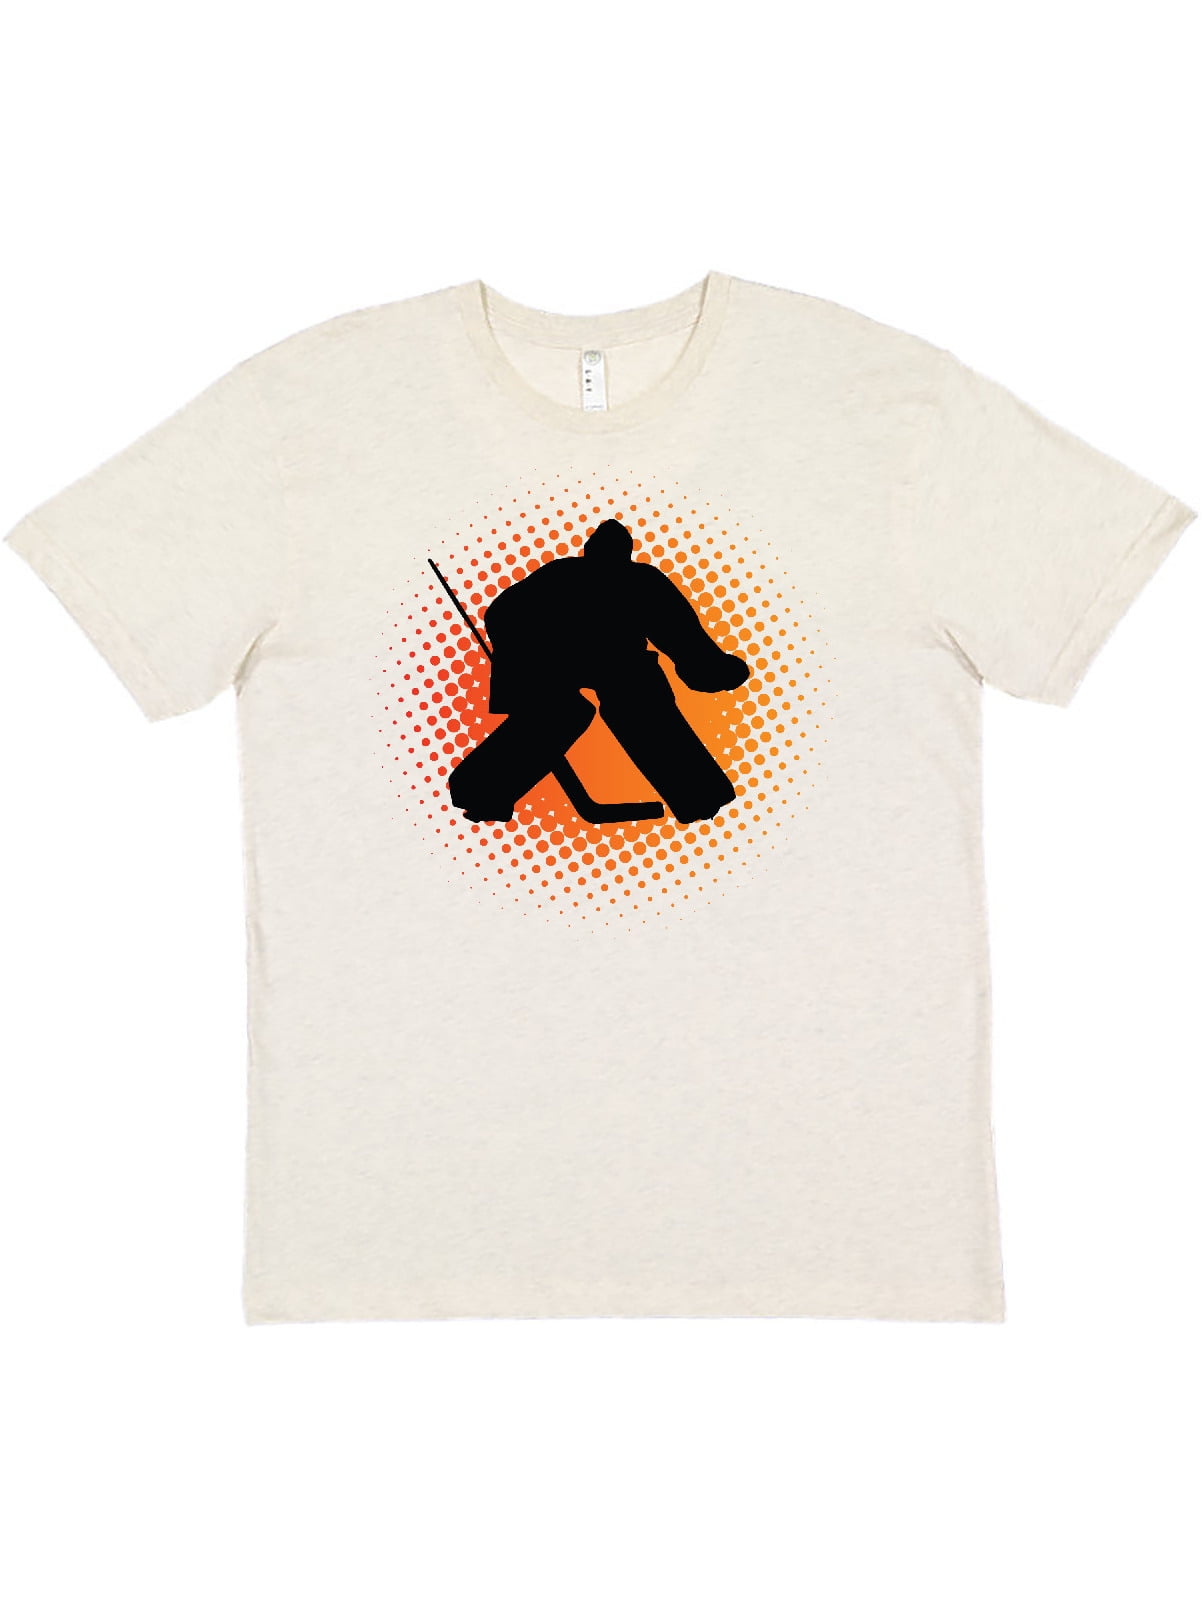 Hockey Goalie Sunset Silhouette Short-Sleeve Unisex T-Shirt